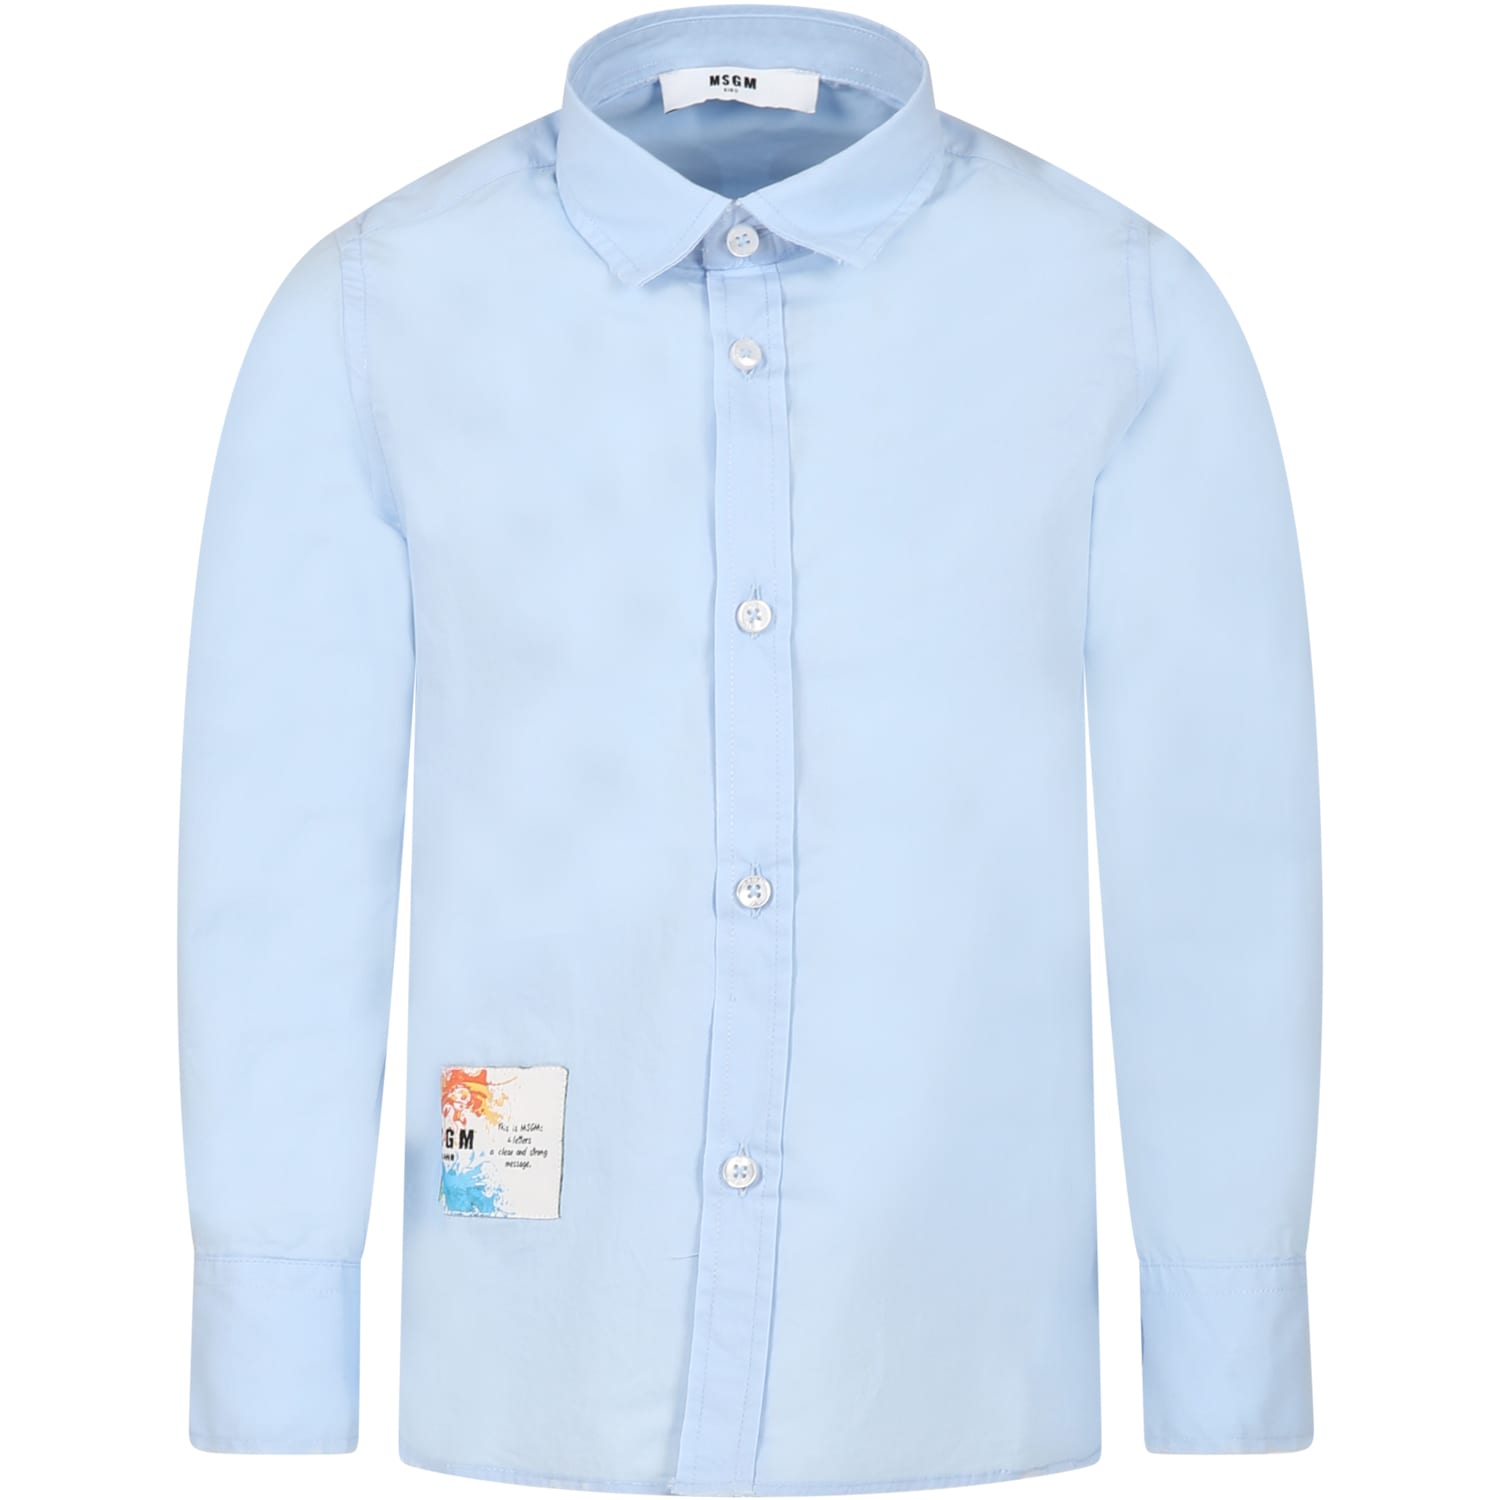 Msgm Kids' Light Blue Shirt For Boy With Logo